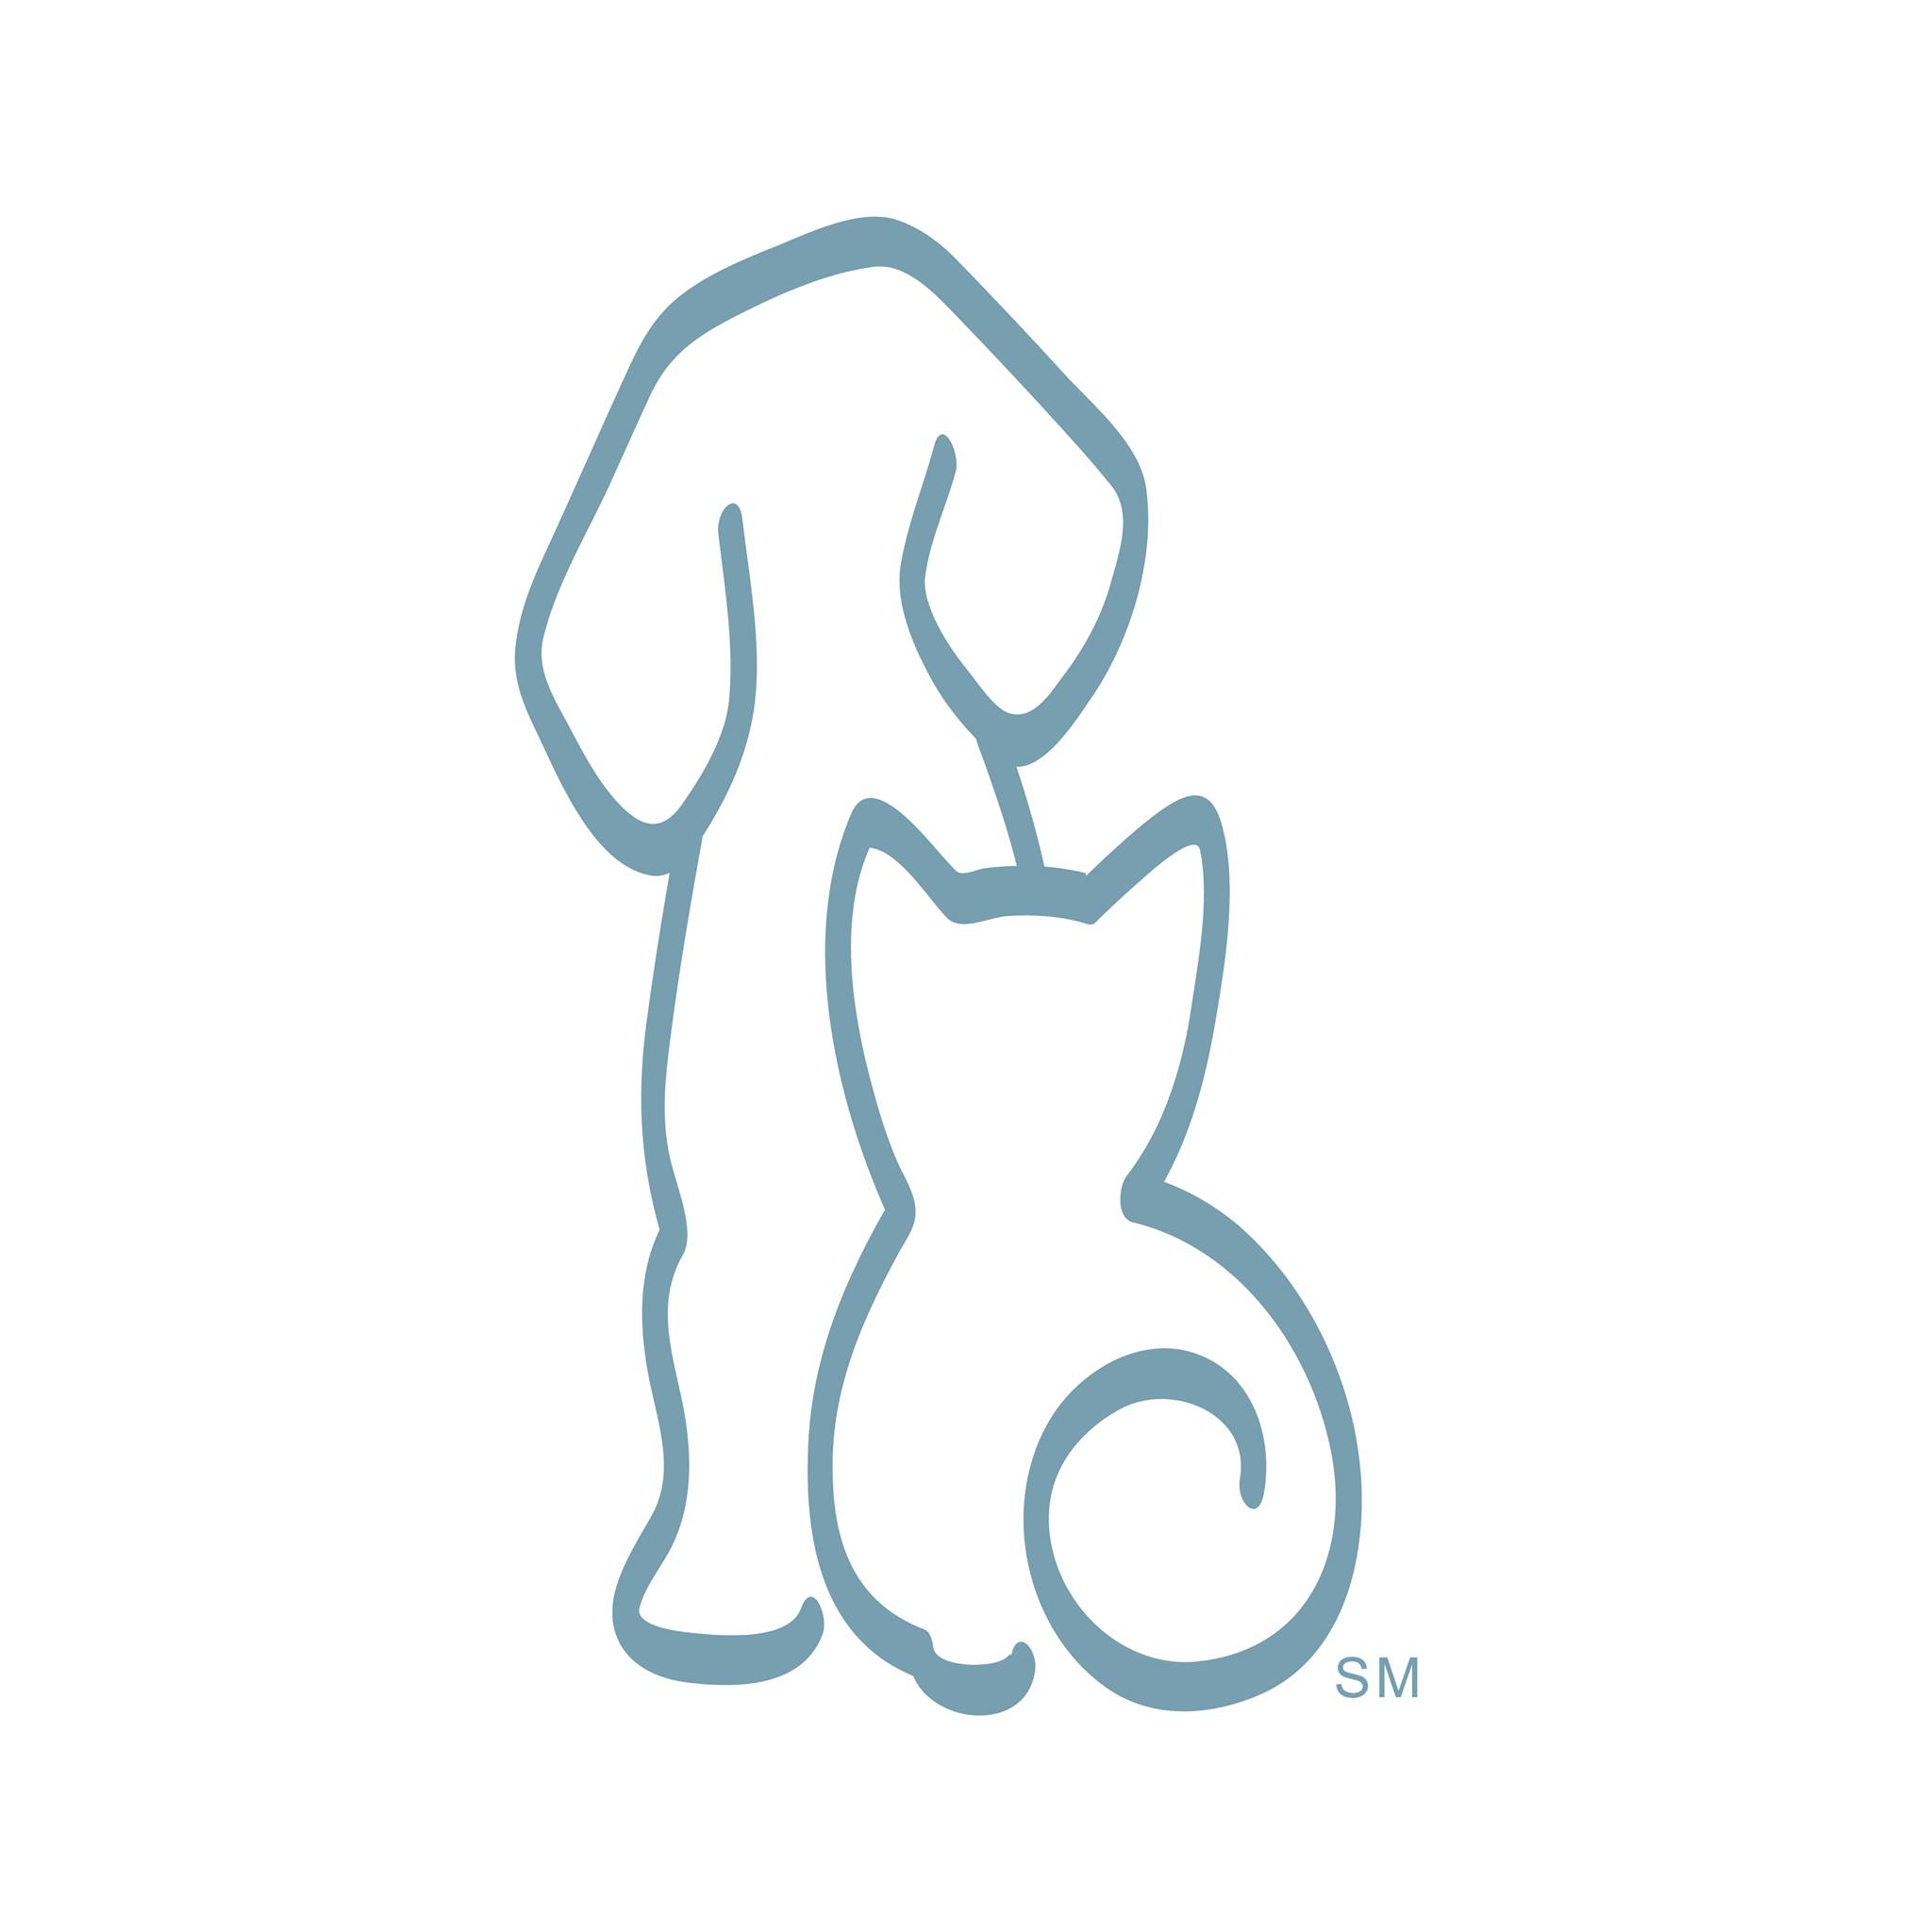 Company logo of Humane Society of Broward County